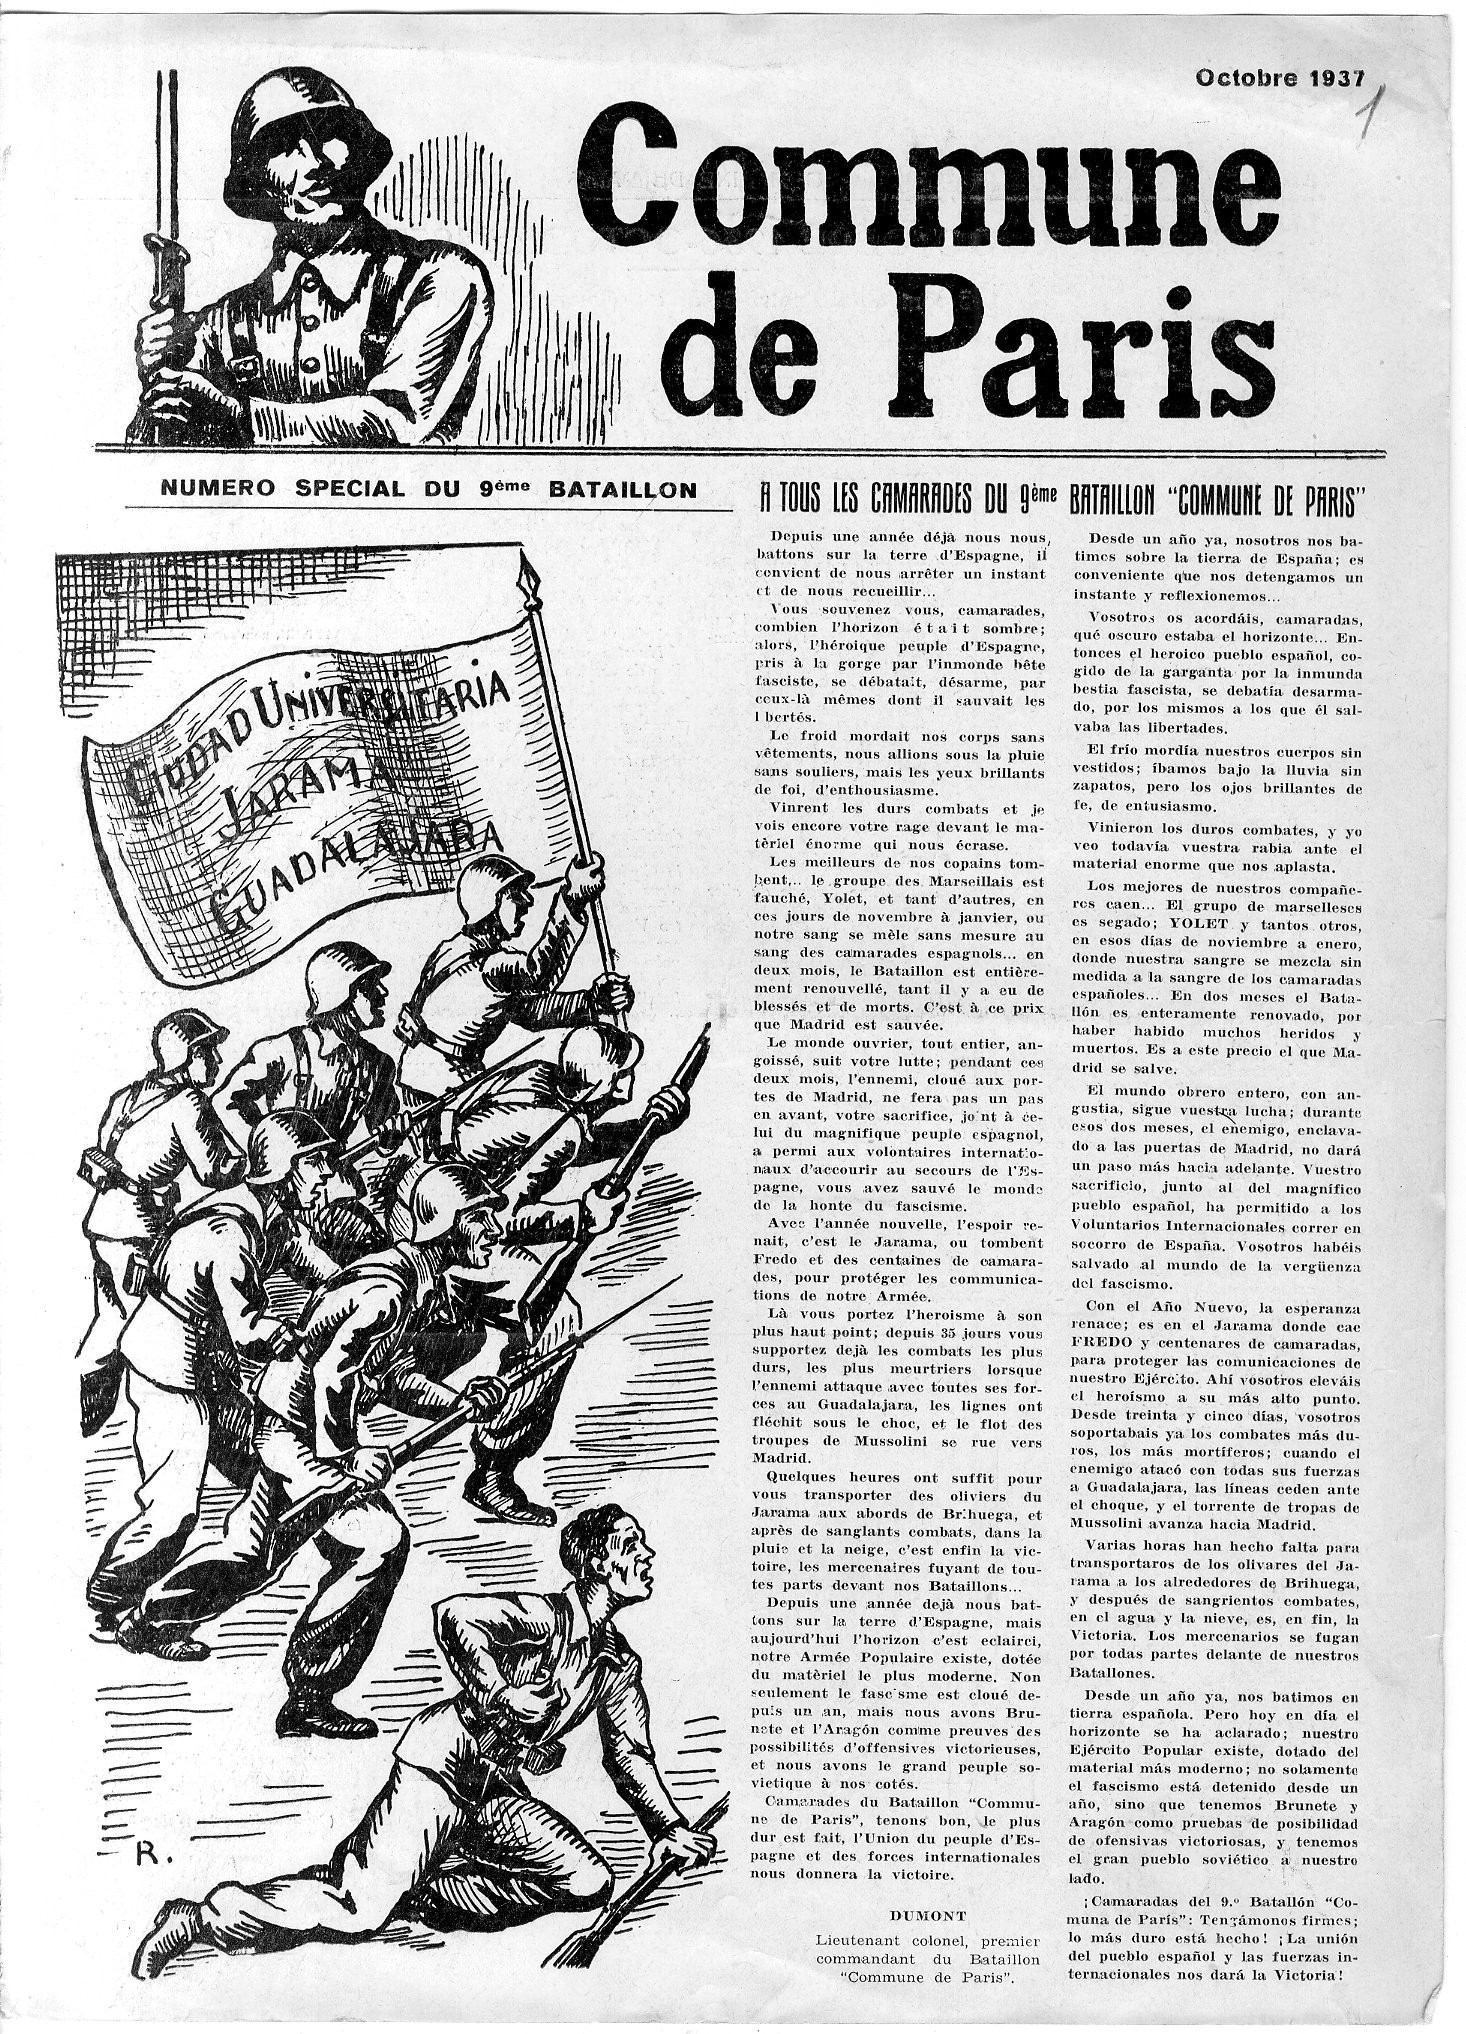 Journal du 9ème bataillon - Commune de Paris (N° spécial octobre 1937) - (Source : RGASPI 545.3.419.1 - https://gabrielperi.fr/commune-de-paris/la-commune-dans-les-brigades-internationales/ )